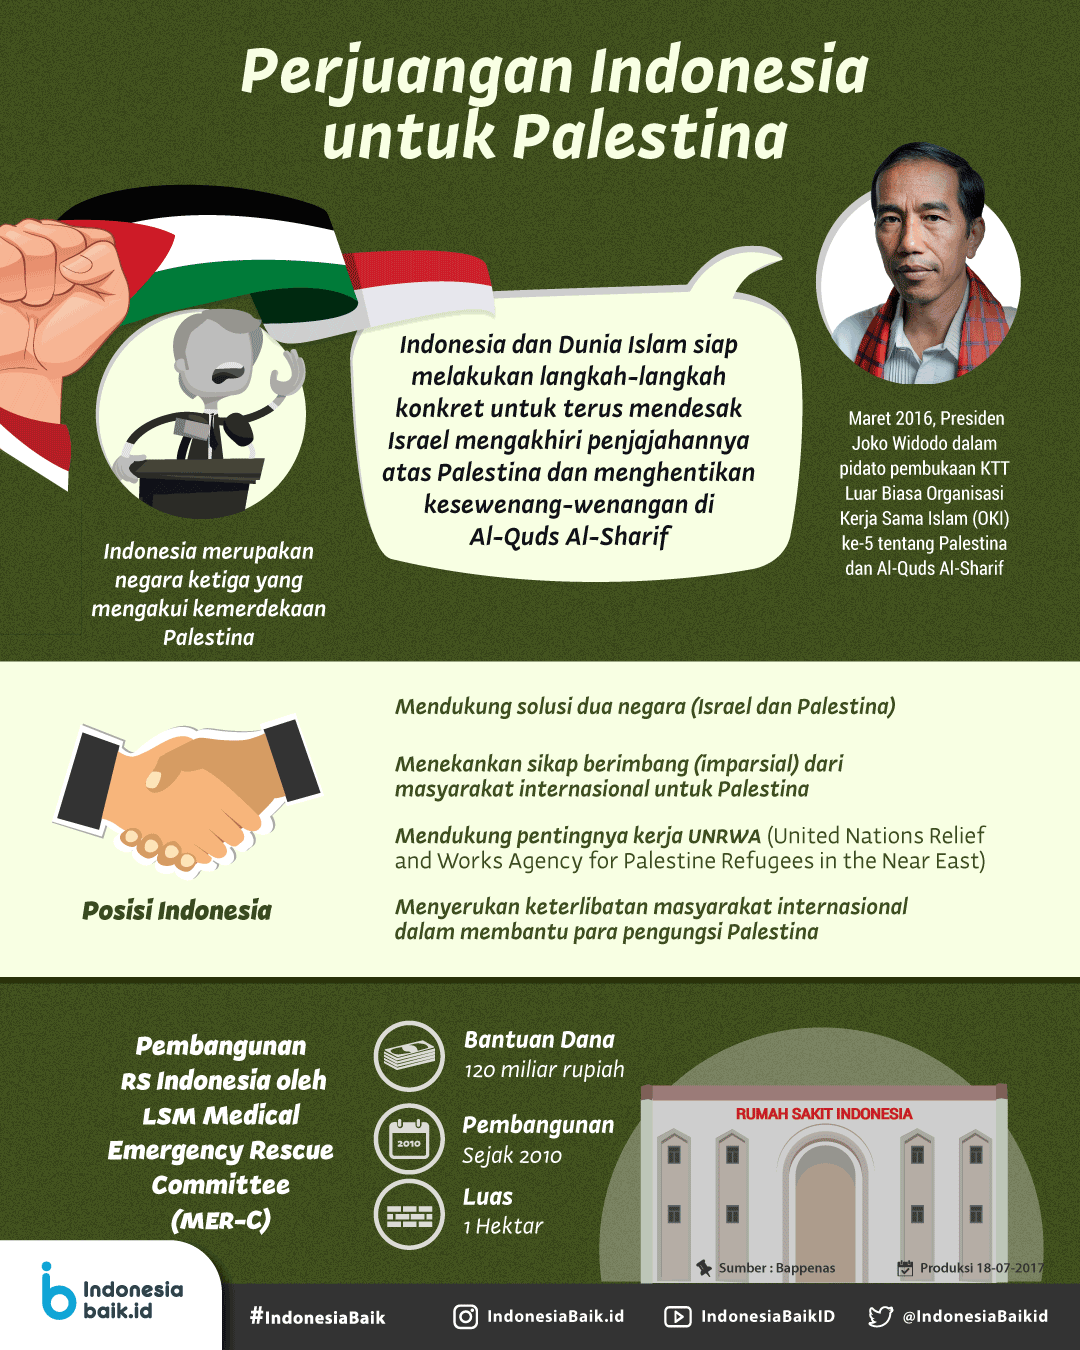 Indonesia dan Palestina